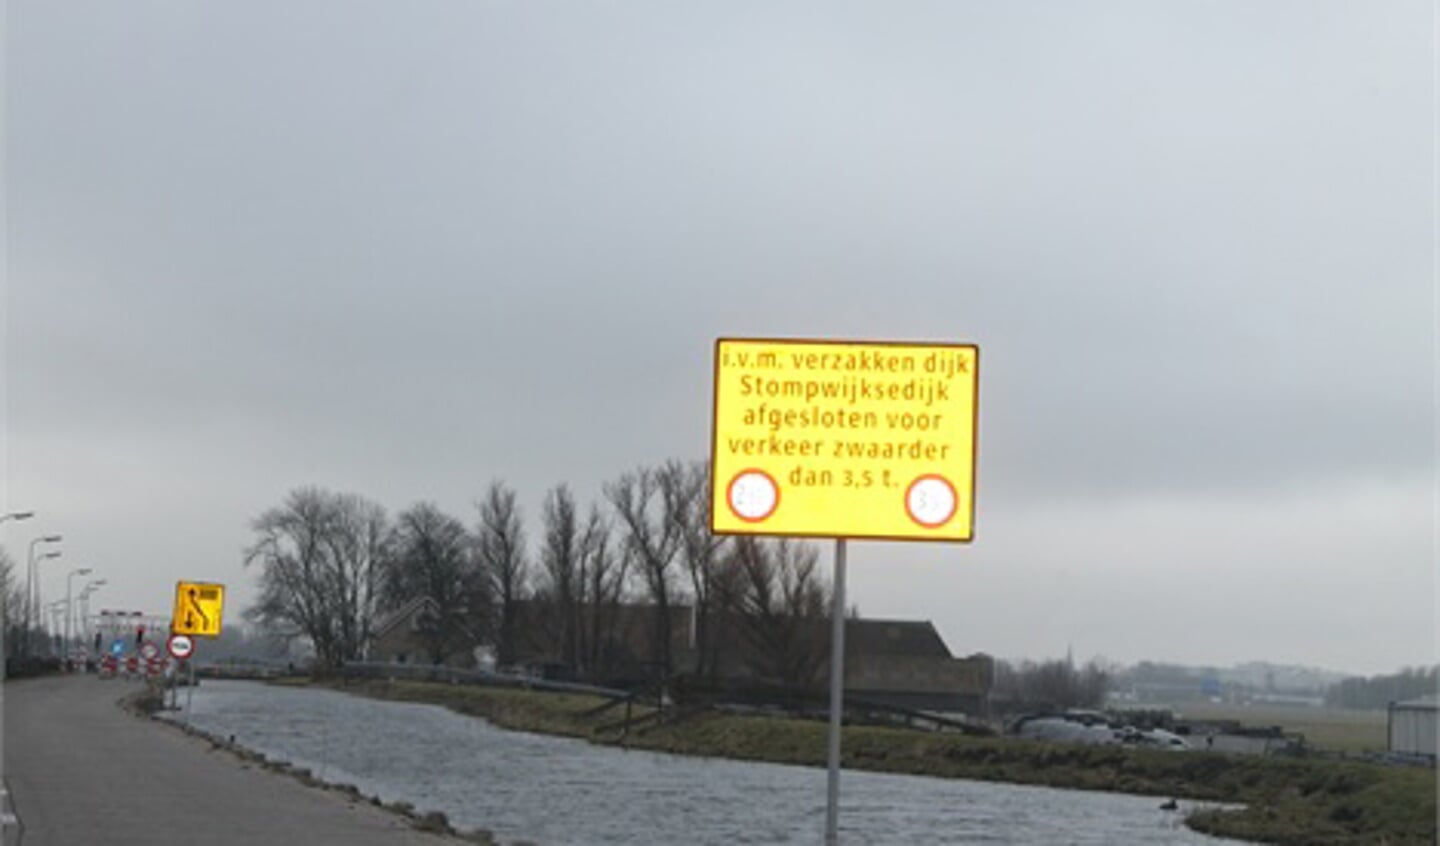 De irritaties lopen op aan de Stompwijkseweg. (foto Het Krantje)